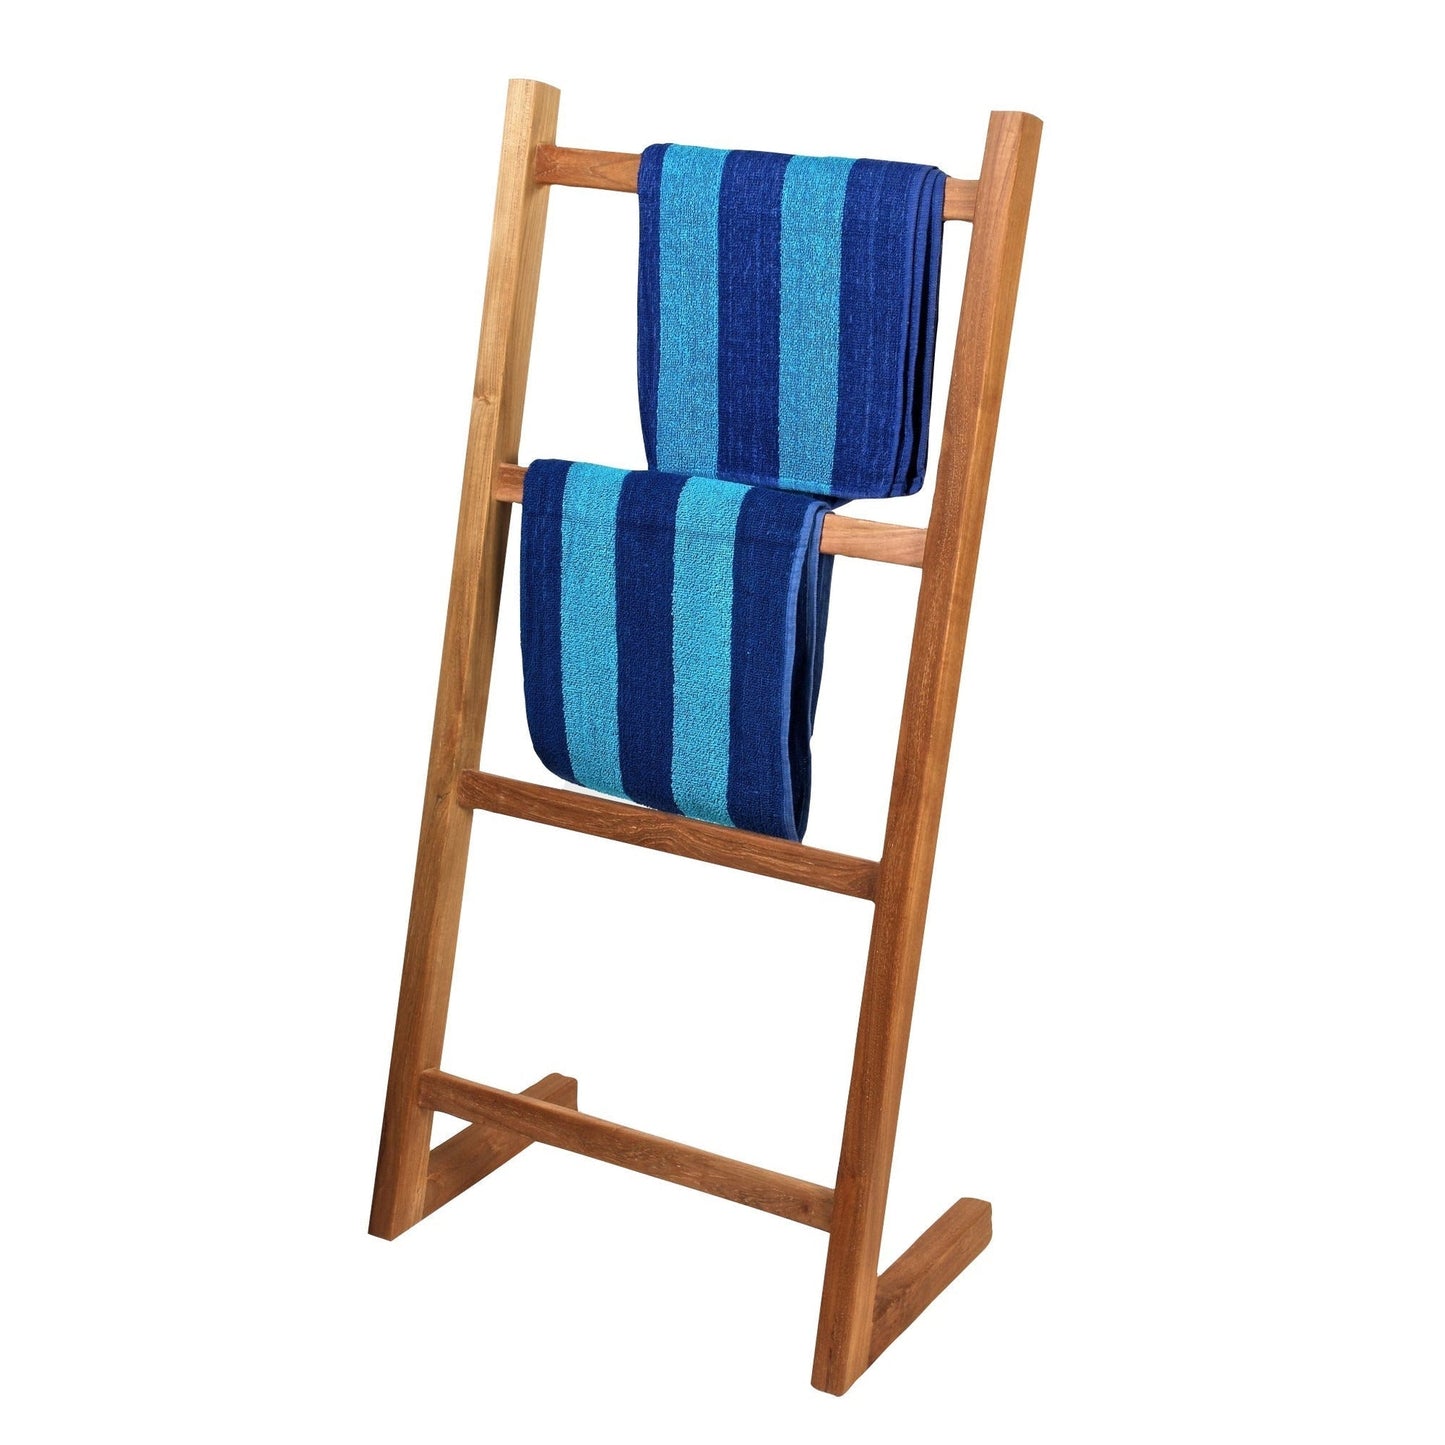 ARB Teak & Specialties 47" Solid Teak Wood Self-Standing Towel Ladder With 4 Bars